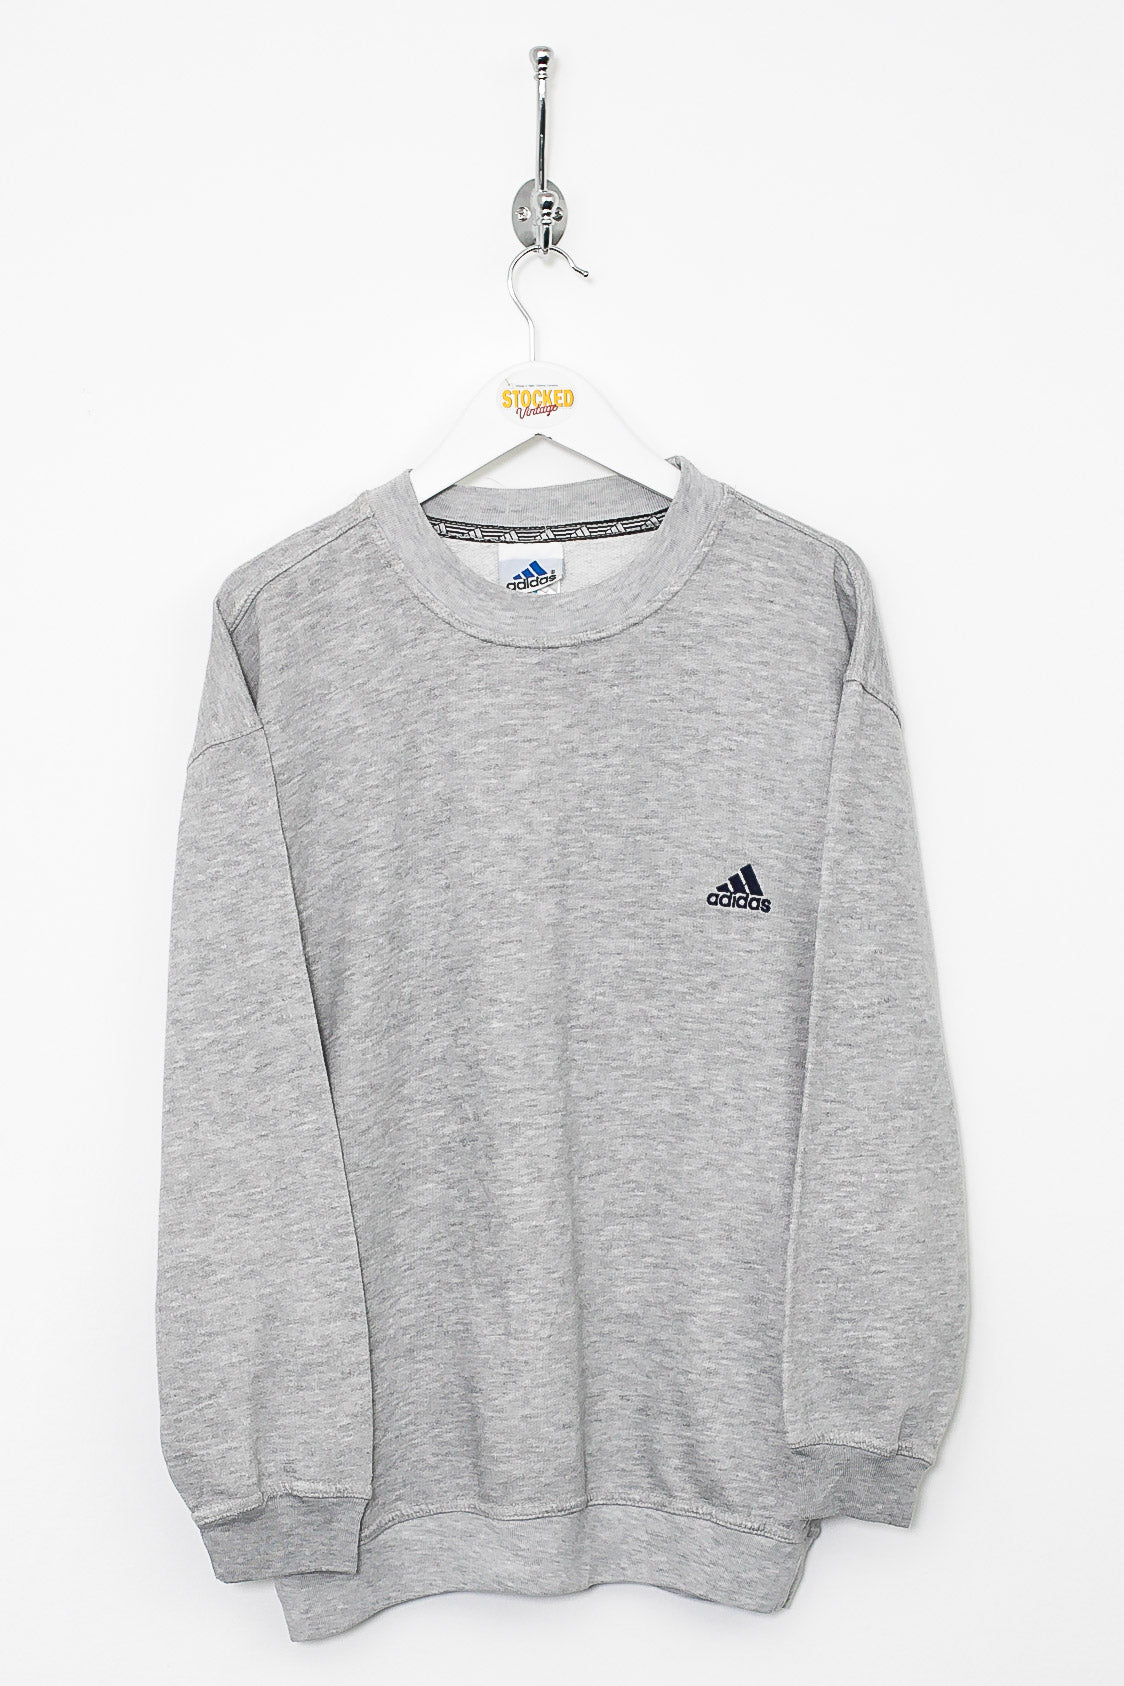 Adidas Sweatshirt (S)